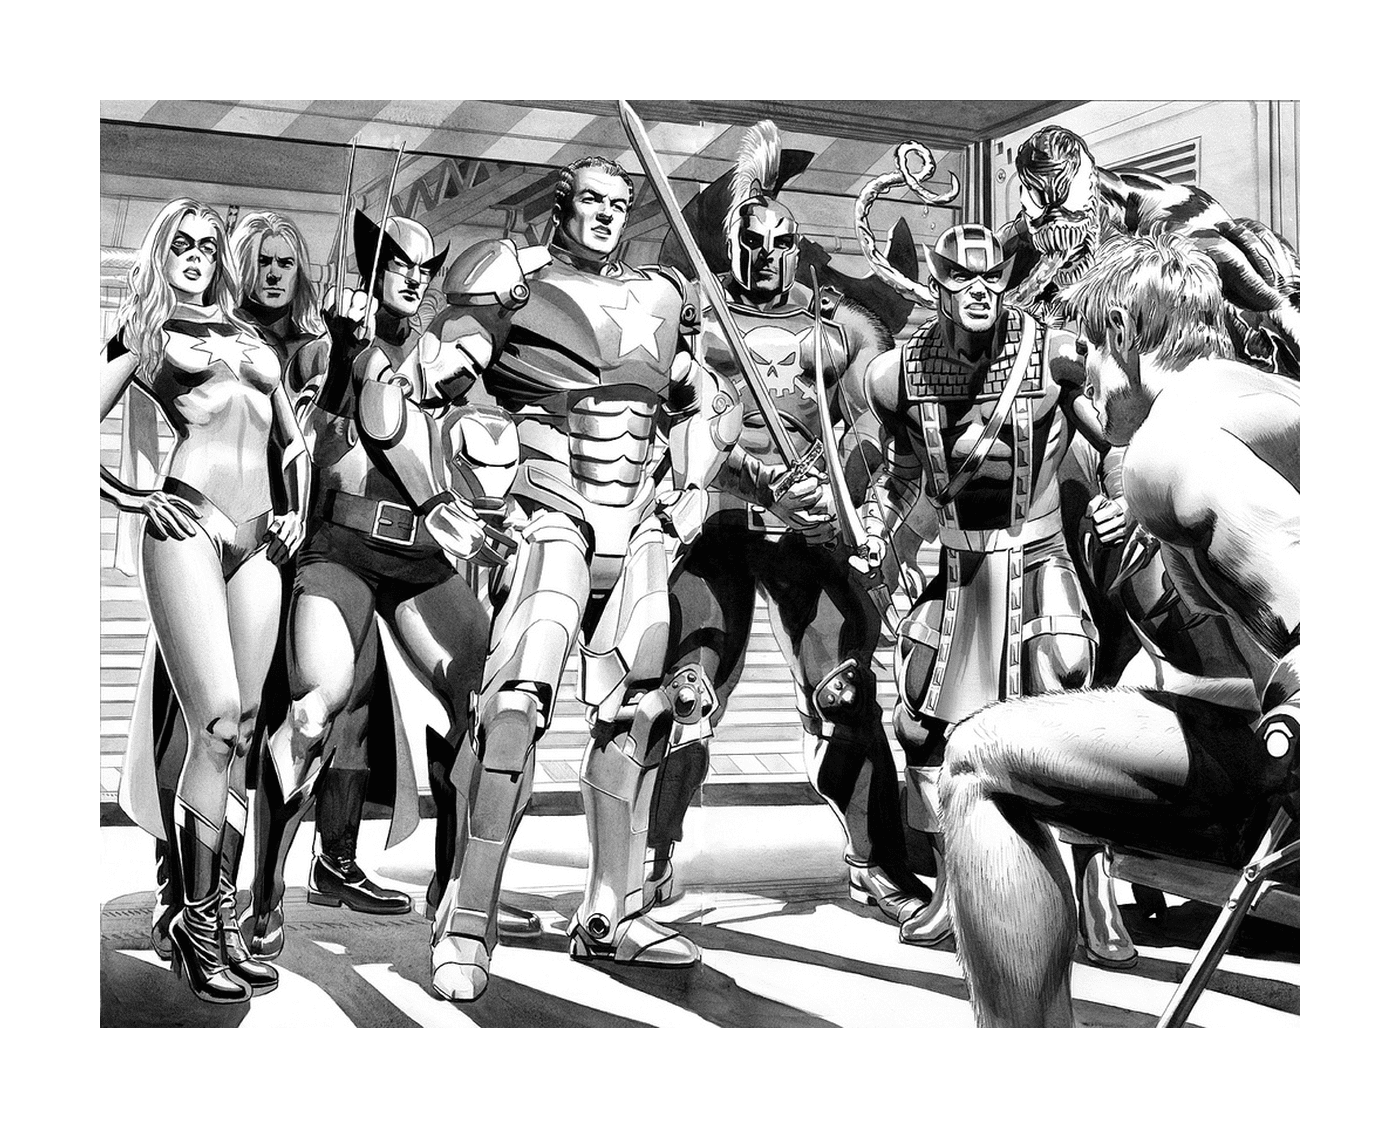  Una fotografía en blanco y negro de un grupo de superhéroes 